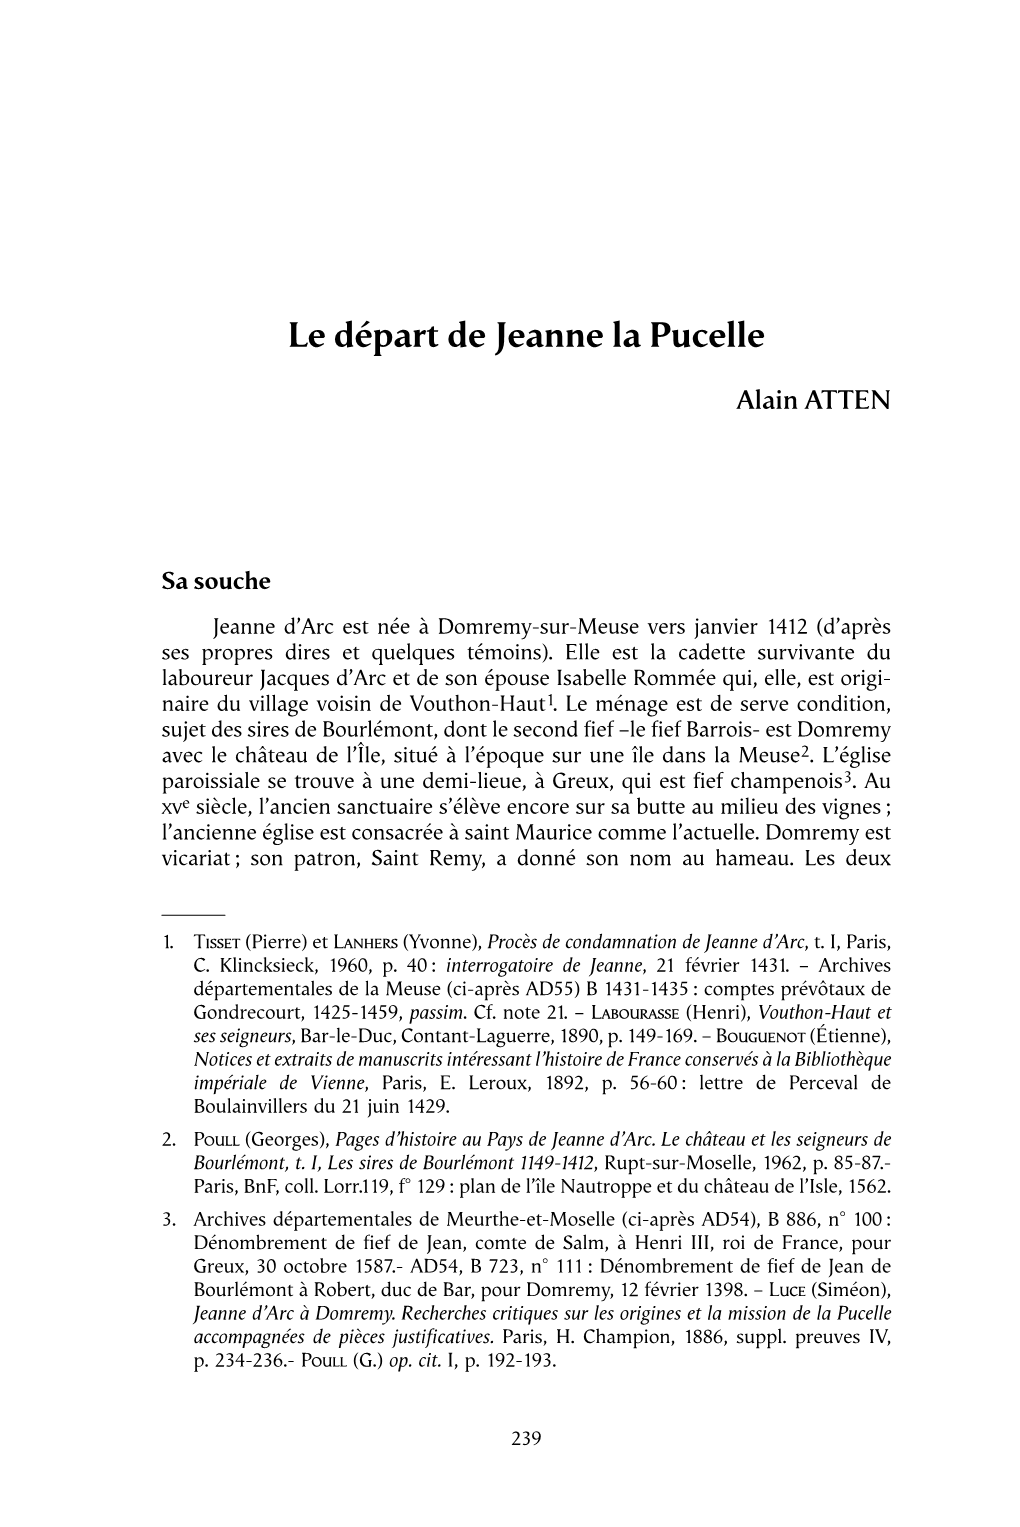 Le Départ De Jeanne La Pucelle